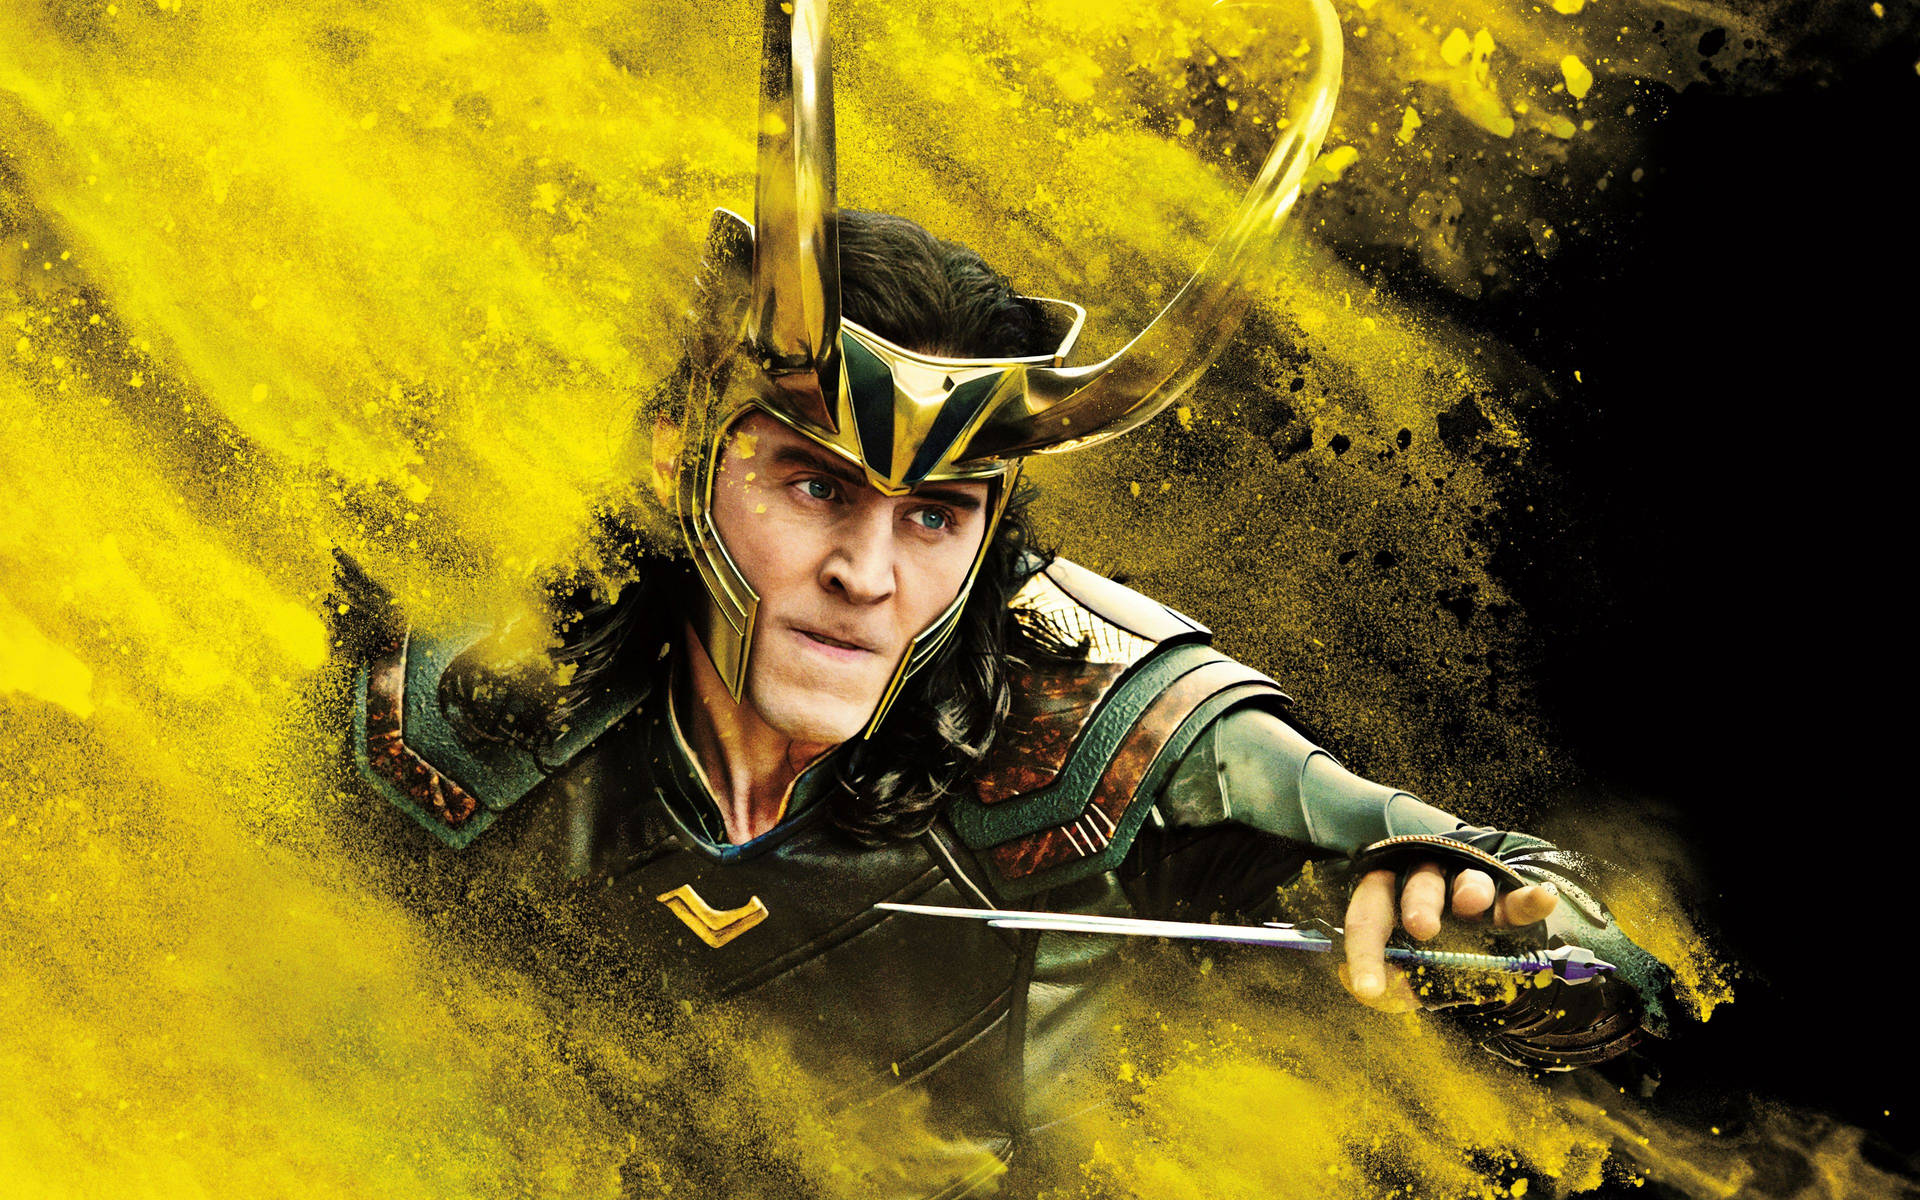 Loki Background